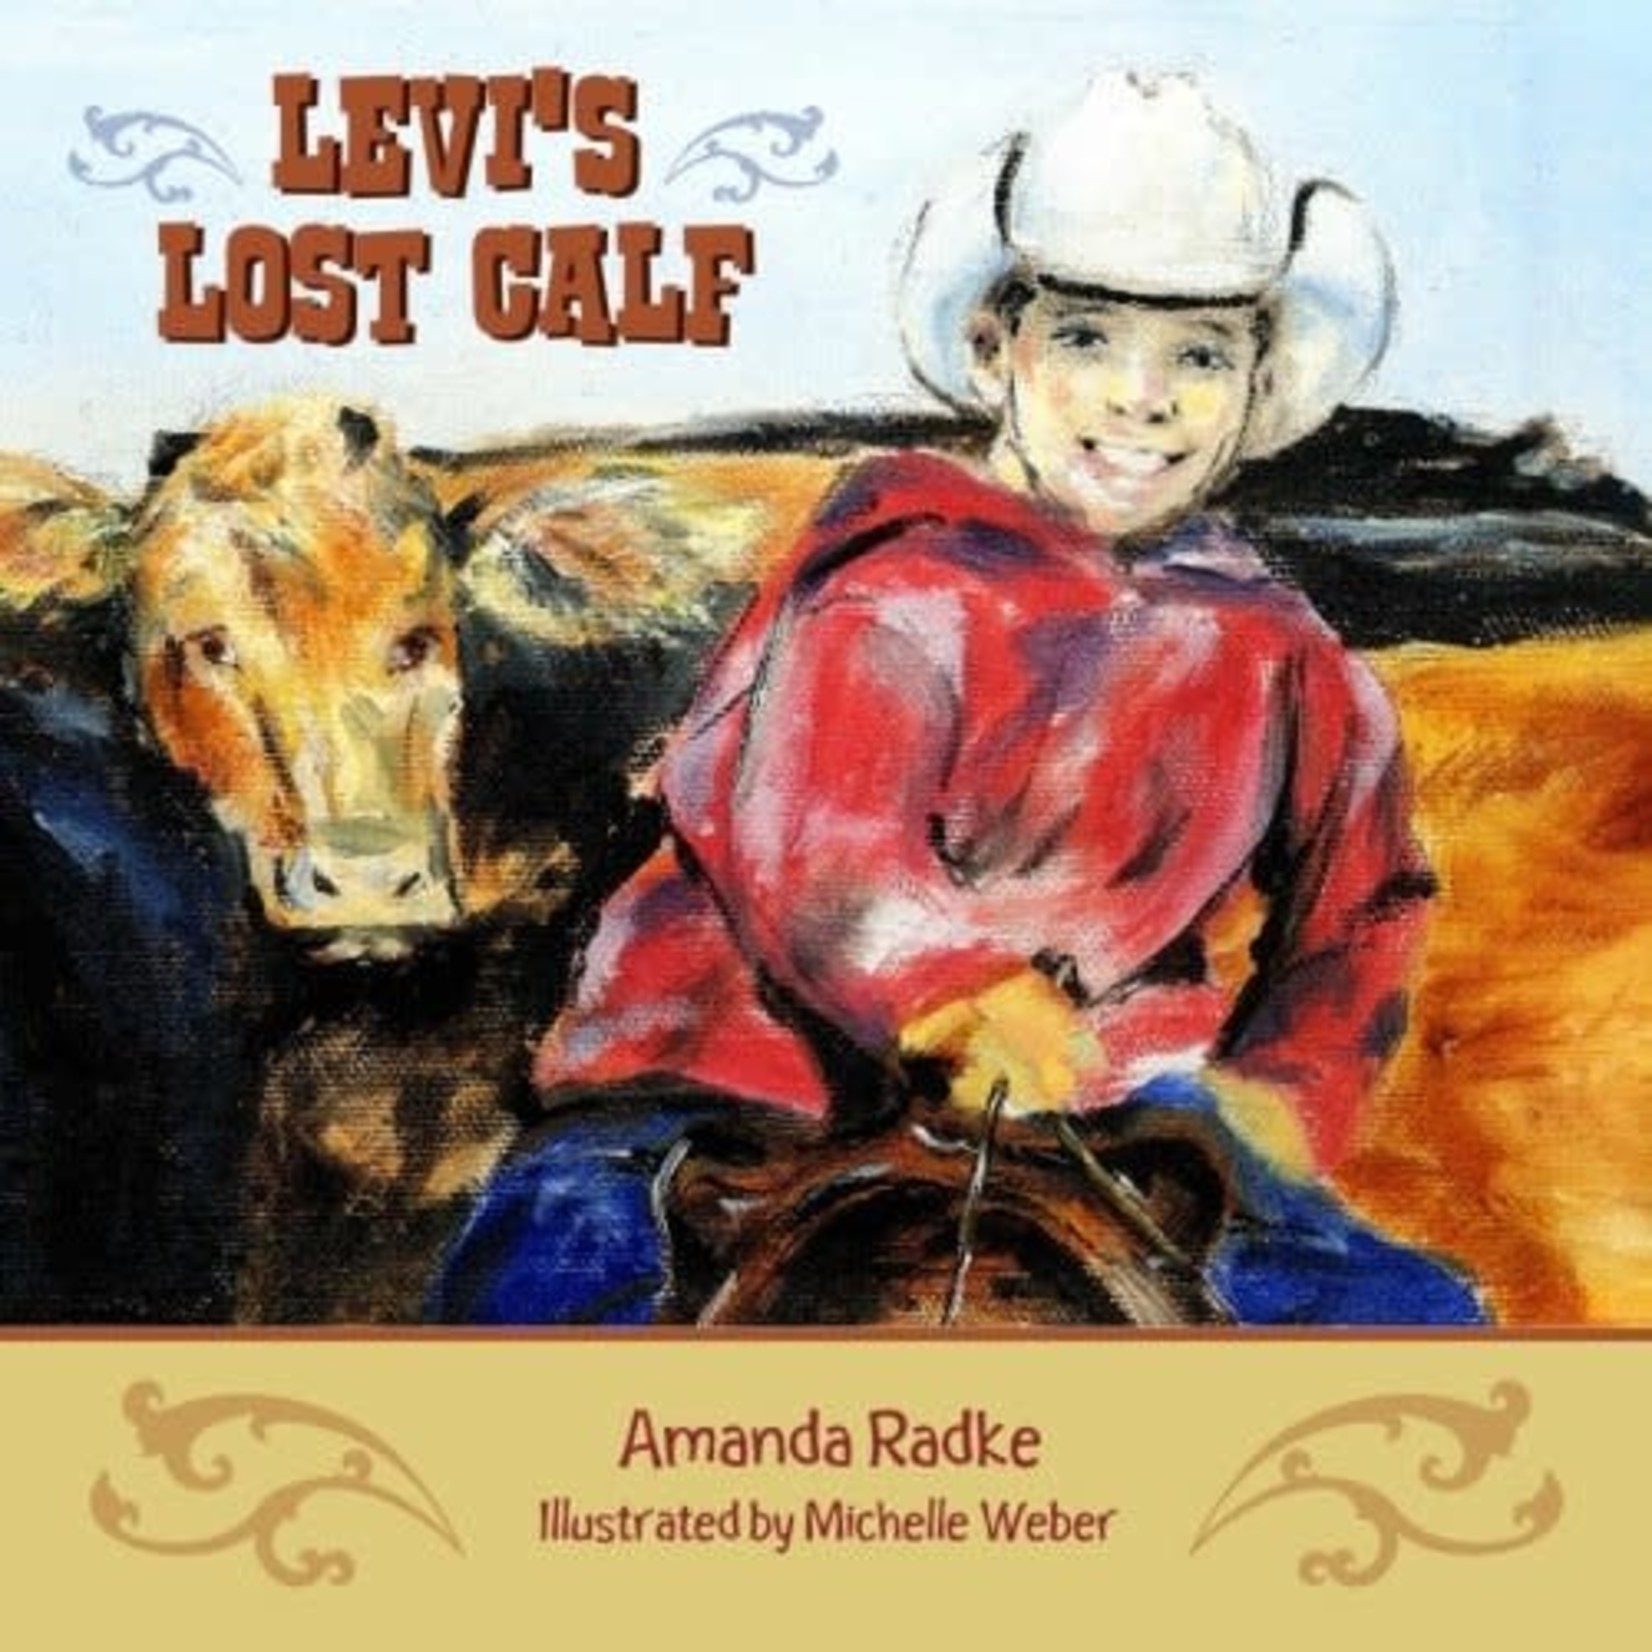 Levi's Lost Calf